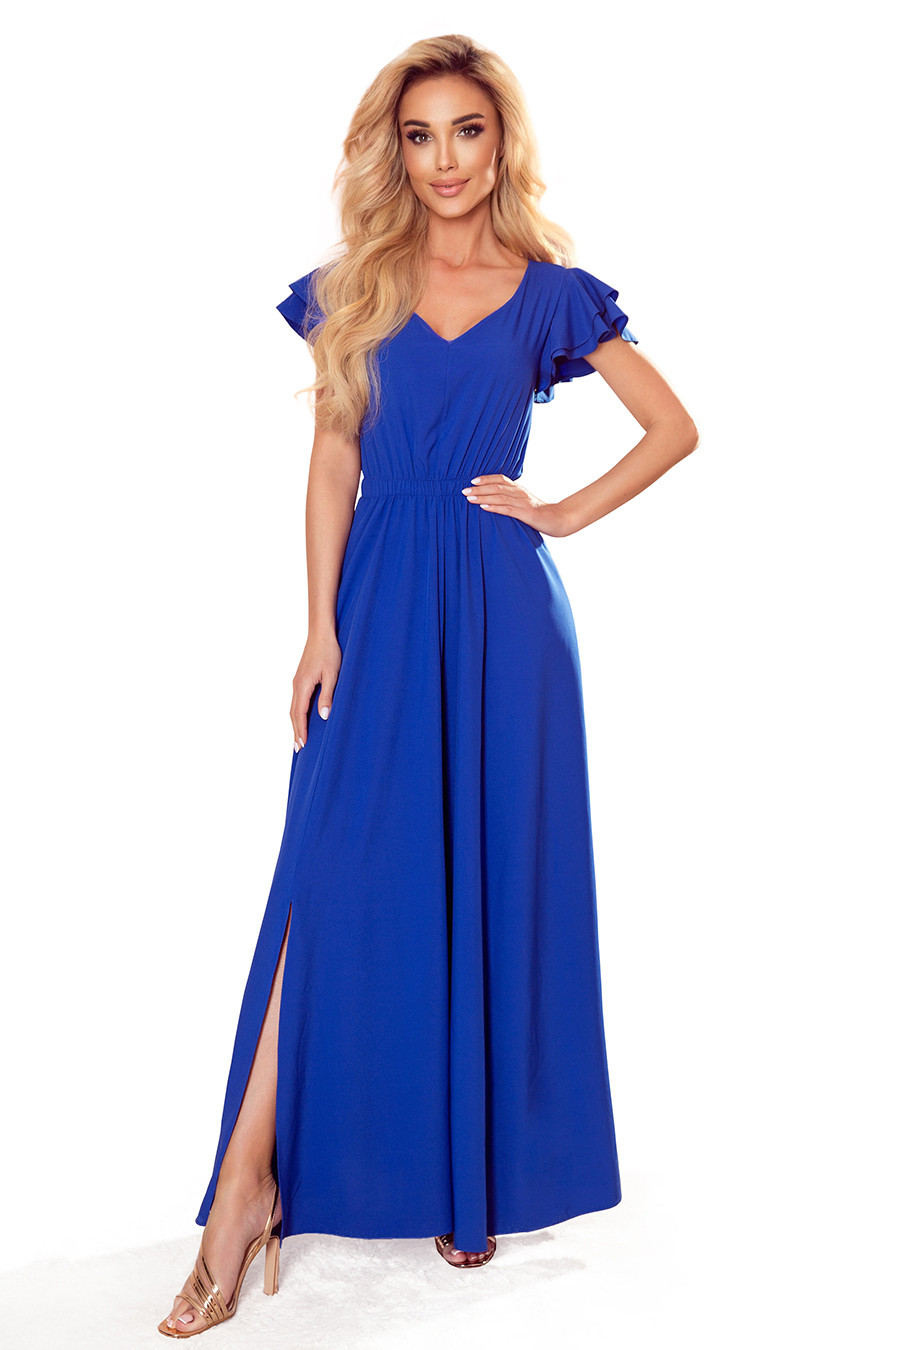 LIDIA - Dlouhé dámské šaty v chrpové barvě s výstřihem a volánky 310-3 XL